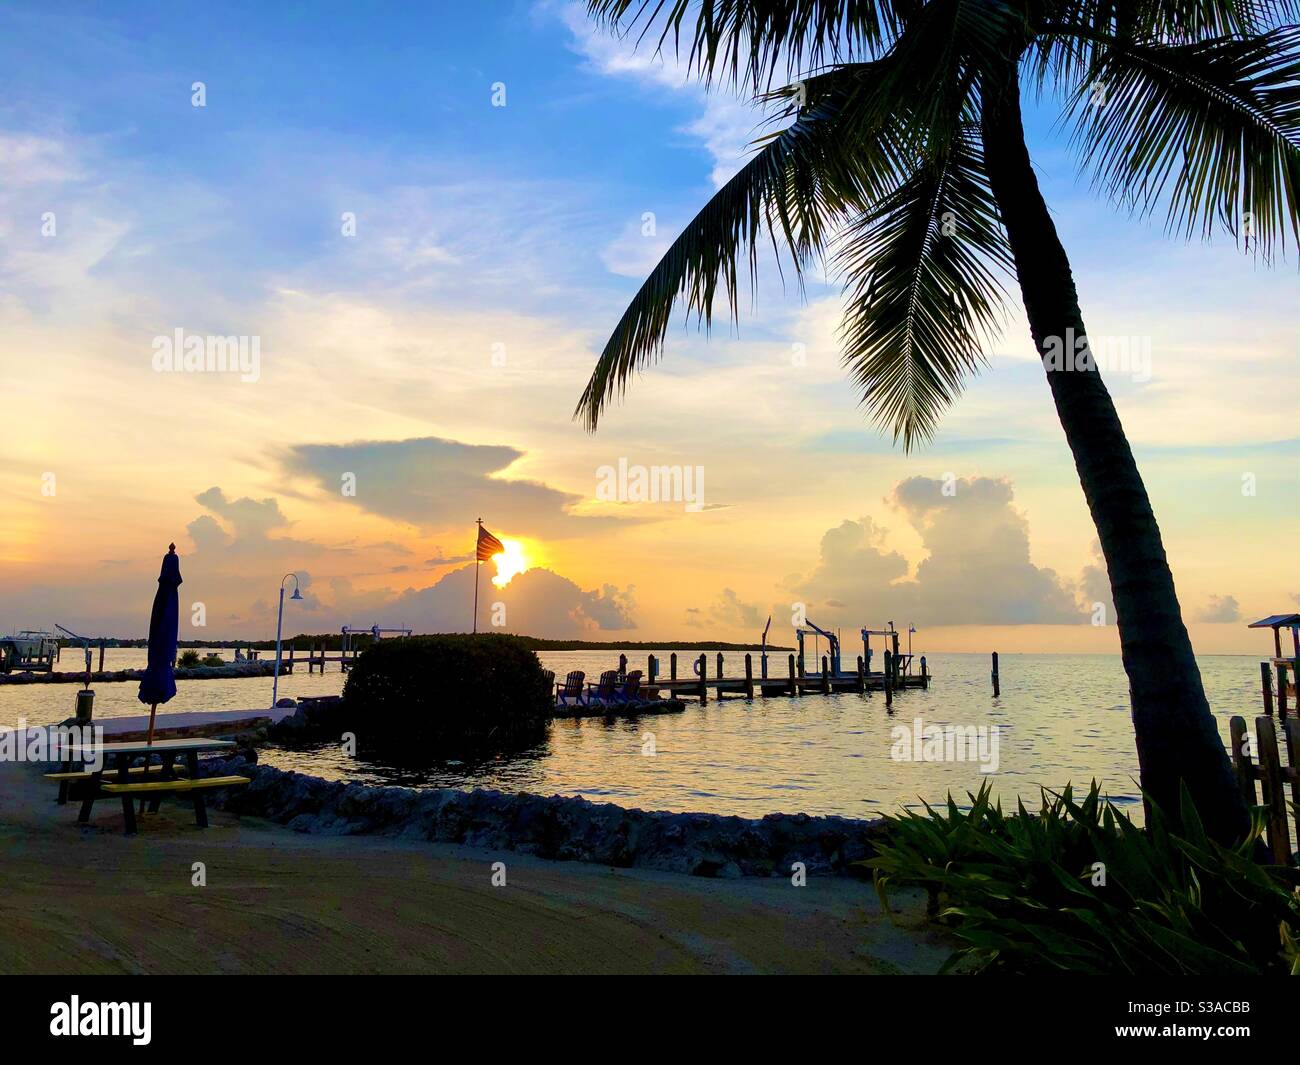 Sonnenuntergang über dem Wasser an einem Pier mit einer Palme und einer US-Flagge. Stockfoto